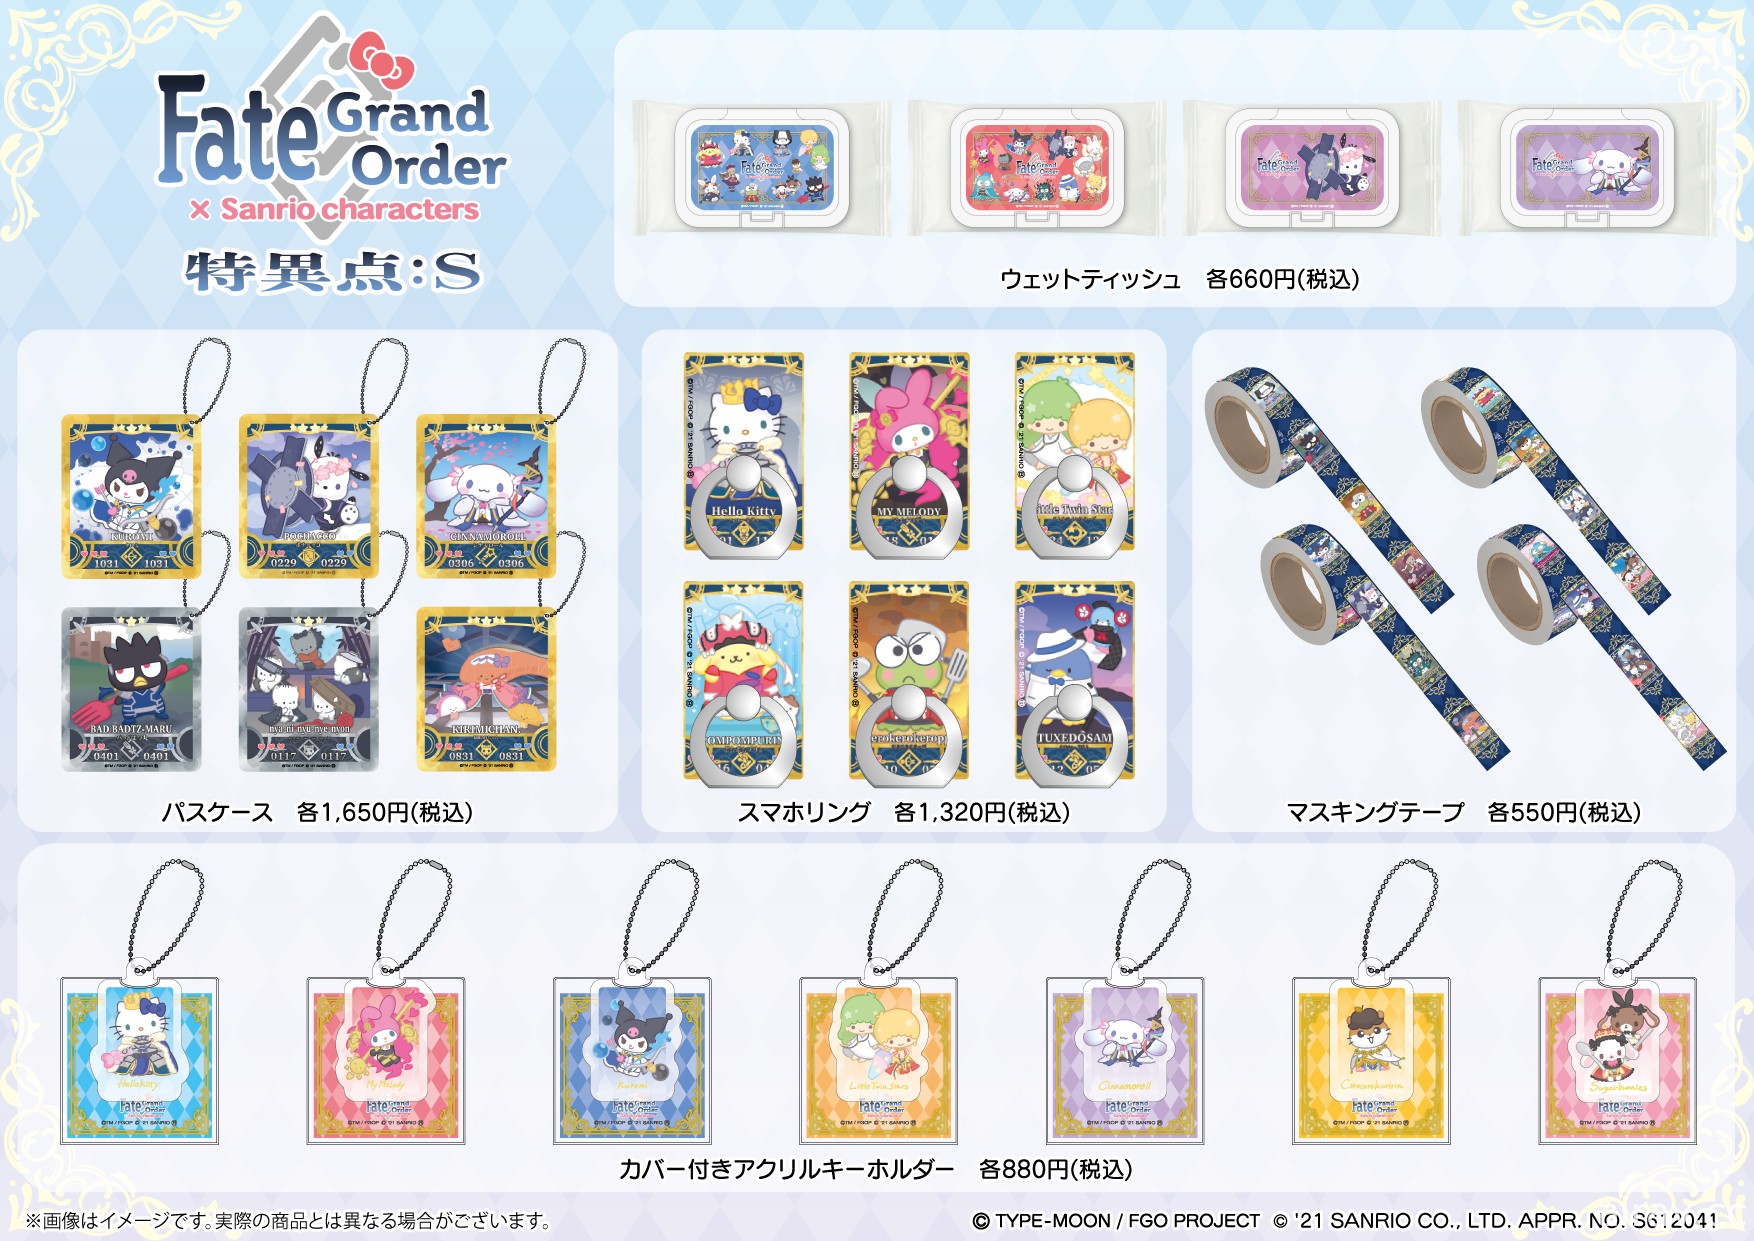 三丽鸥角色 ×《Fate/Grand Order》合作商品开放预购  Hello Kitty 等角色化身从者